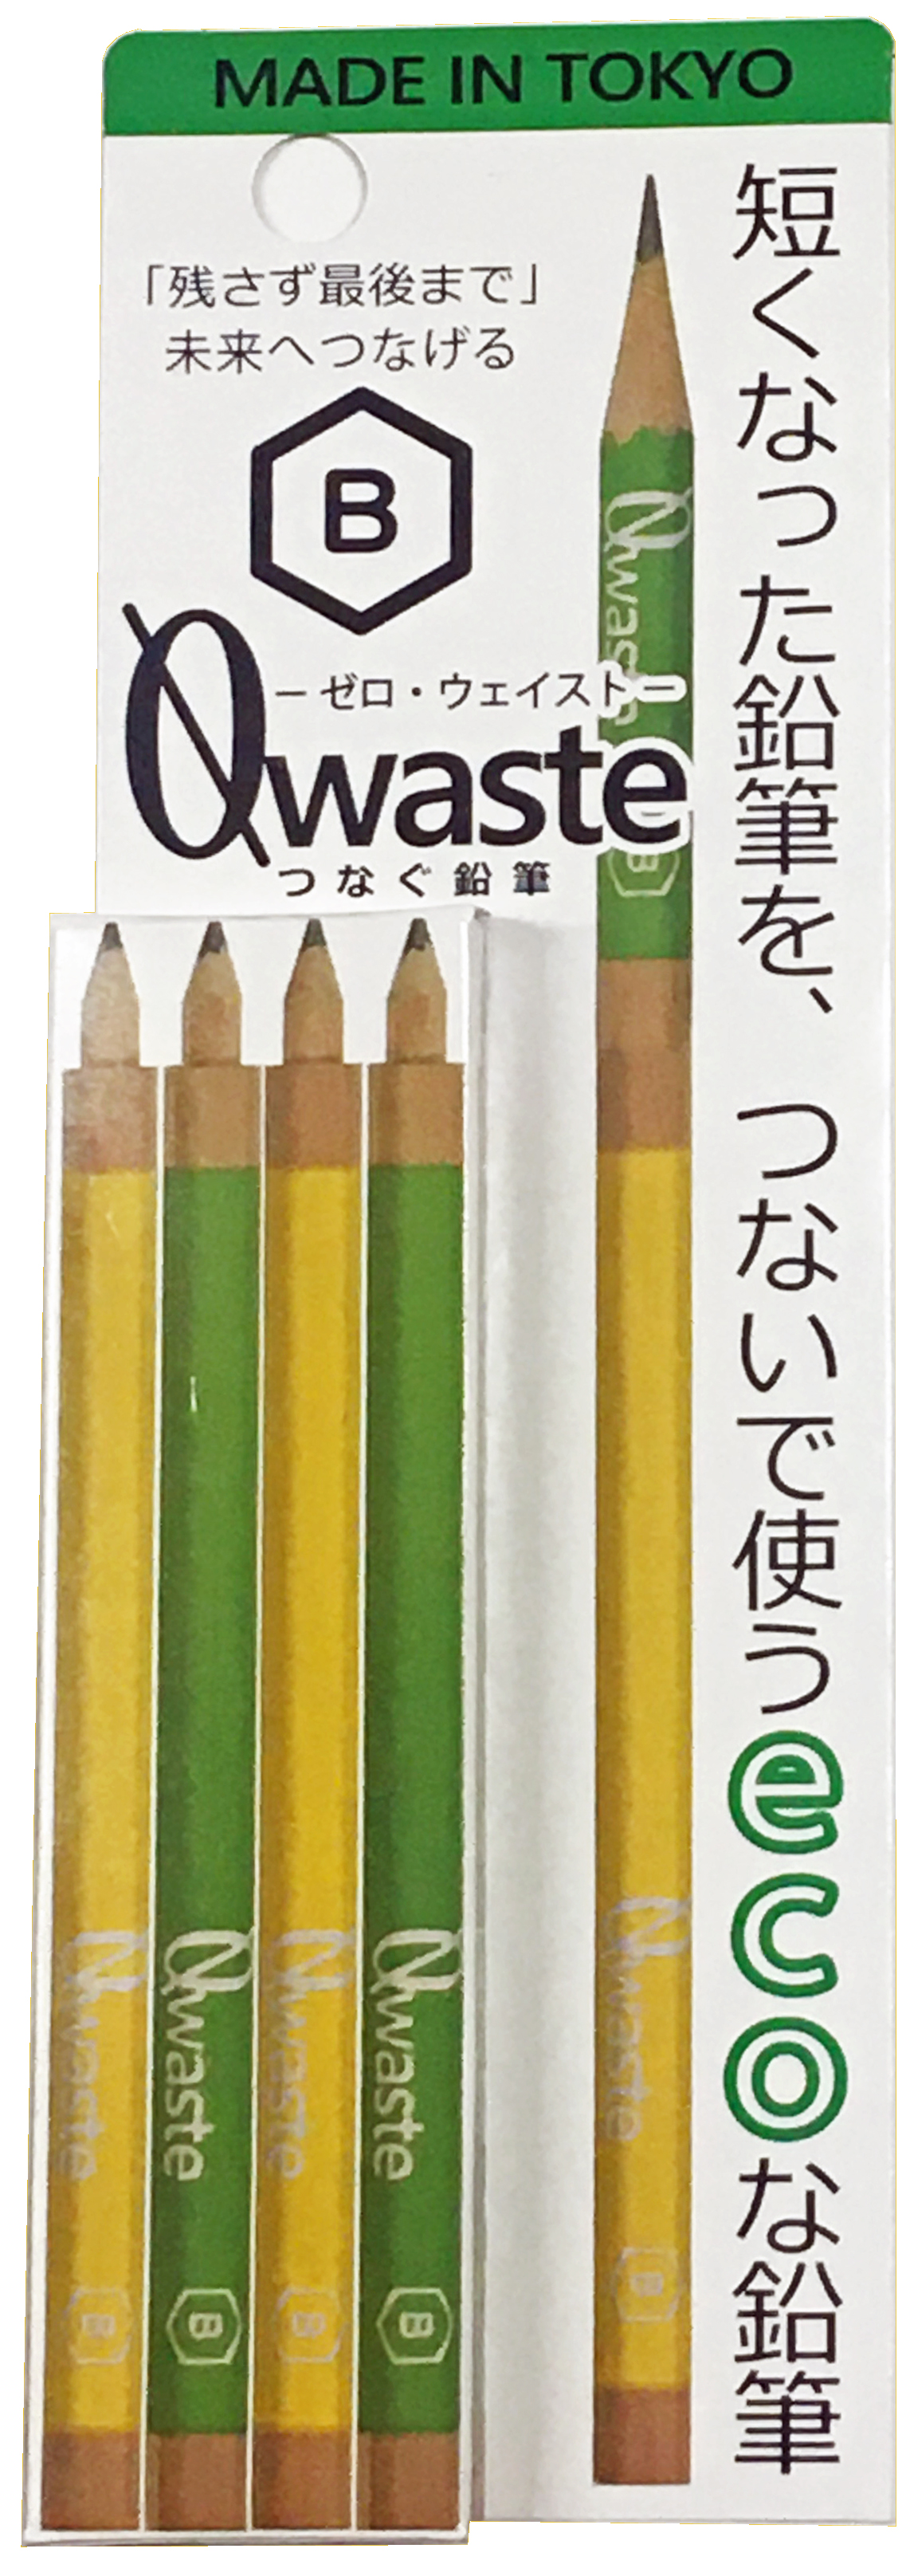 つなぐ鉛筆4本組 B